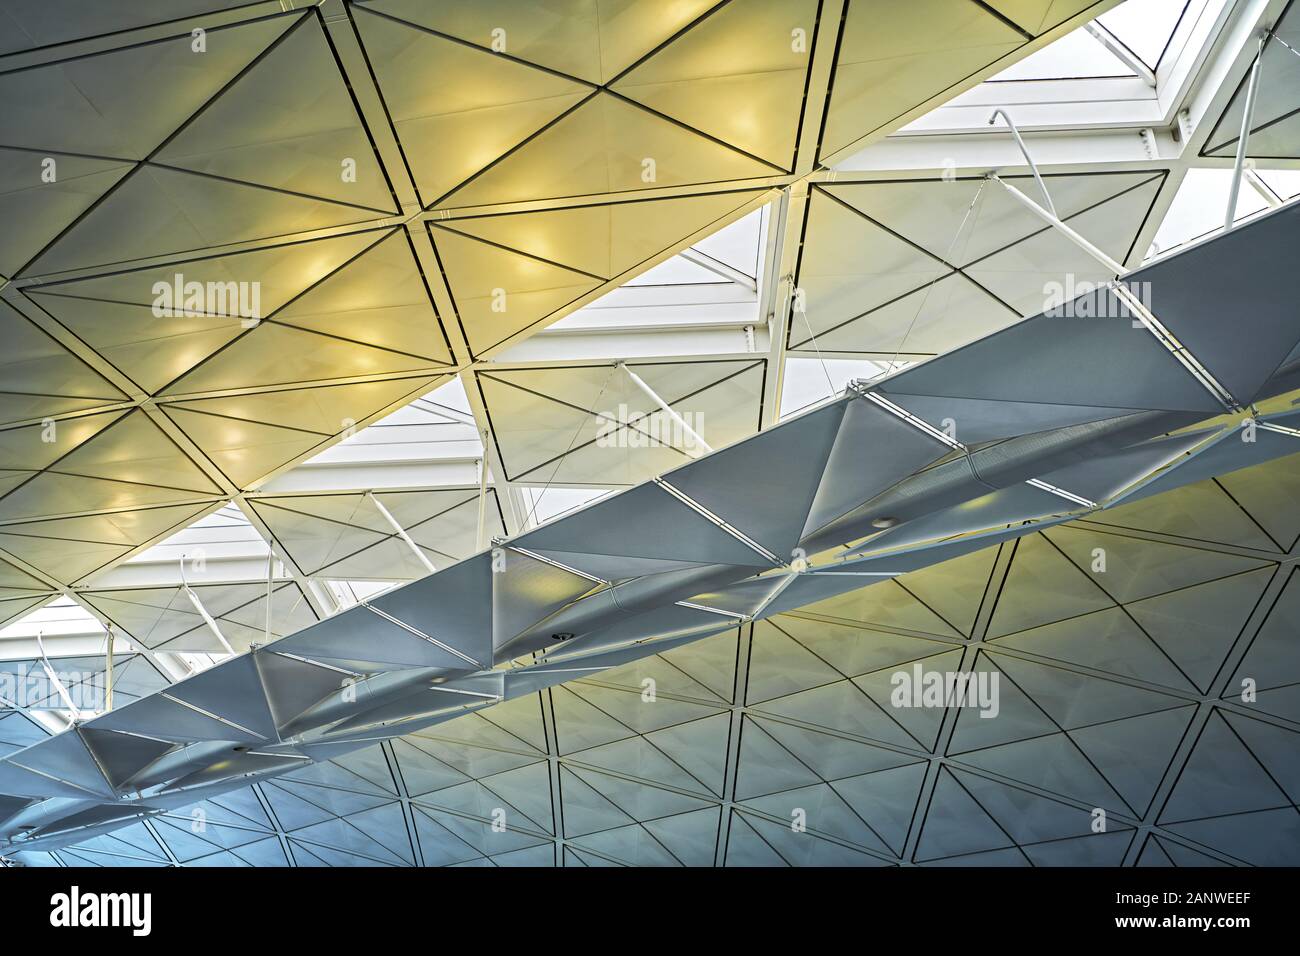 Hong Kong View At The Futuristic Ceiling Design Inside Hong Kong